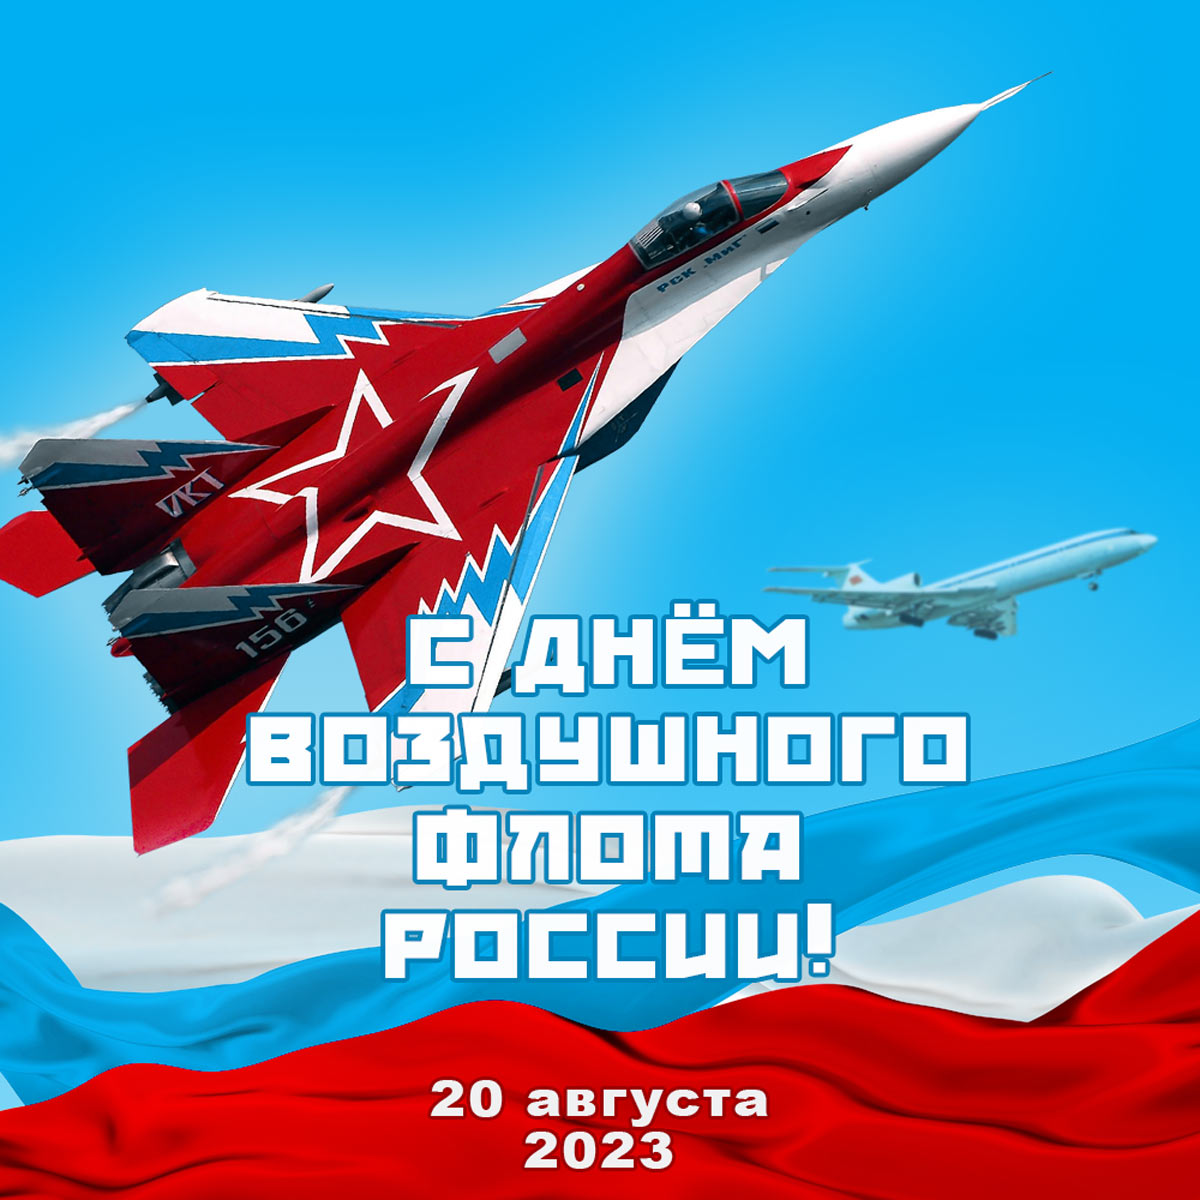 Поздравляю с Днем воздушного флота РФ!